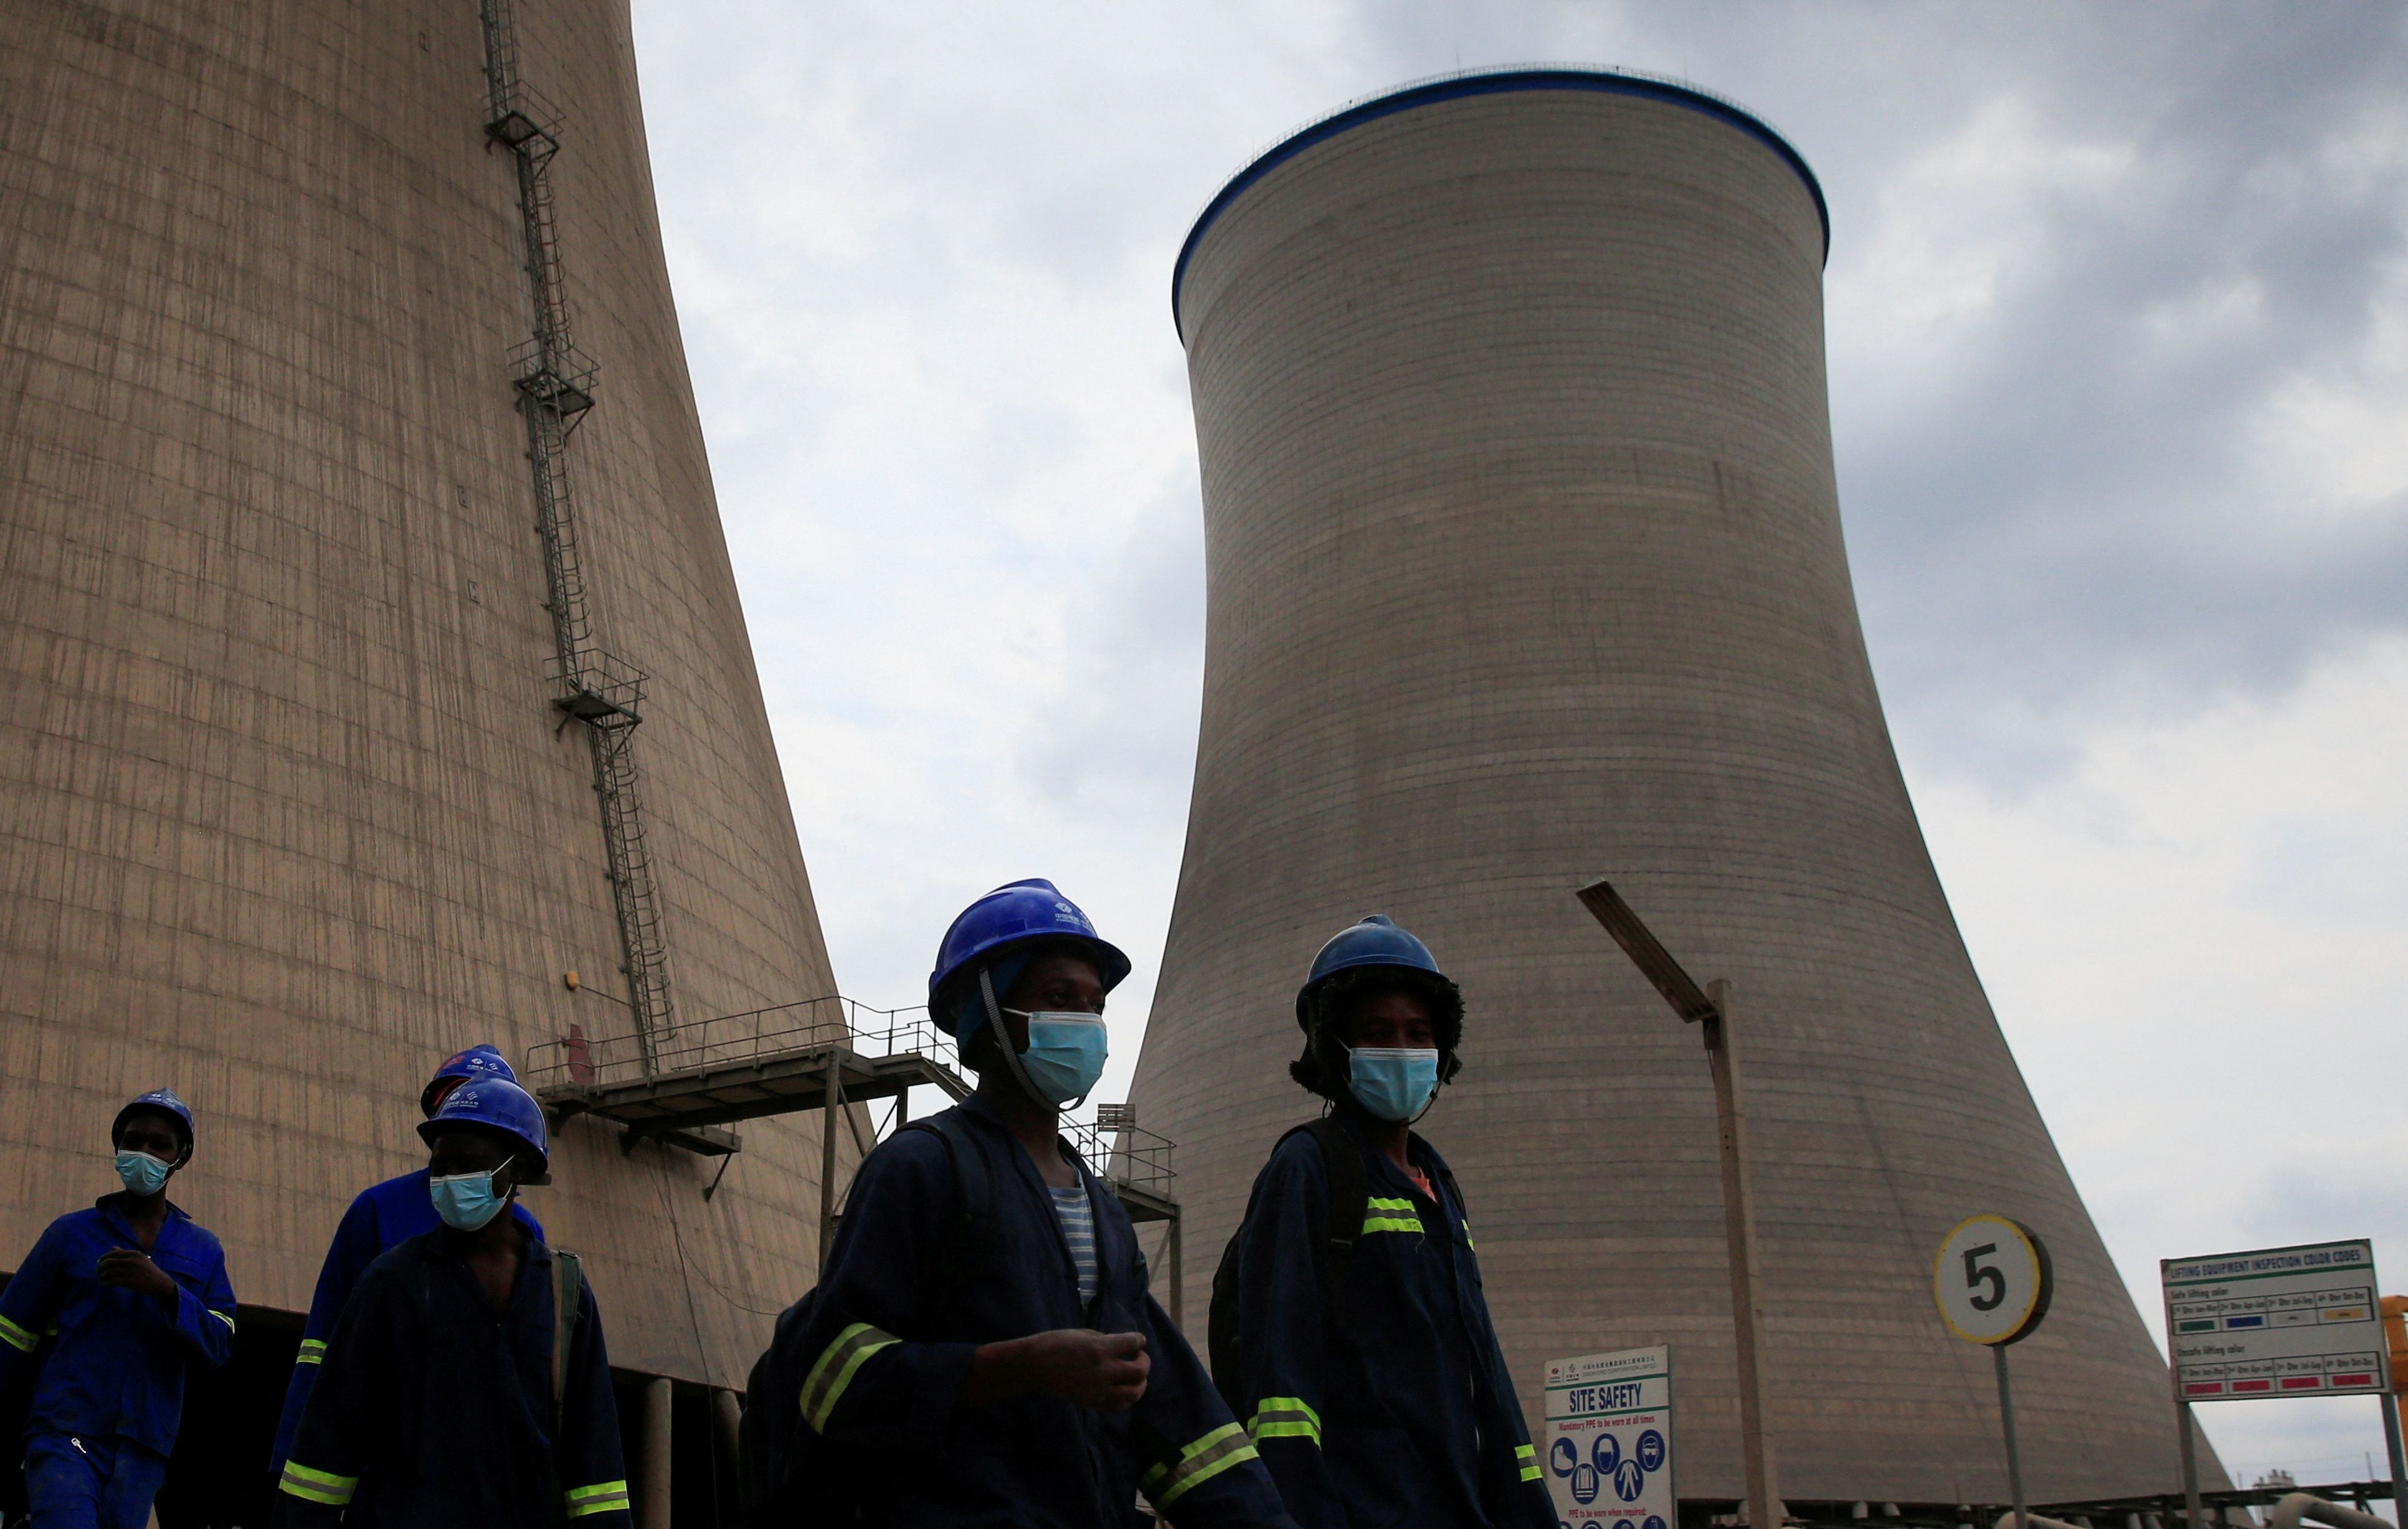 Trabajadores caminan bajo las torres de refrigeración de la Fase 8 de la central eléctrica de Hwange de Zimbabue, construida por empresas chinas (REUTERS/Philimon Bulawayo)